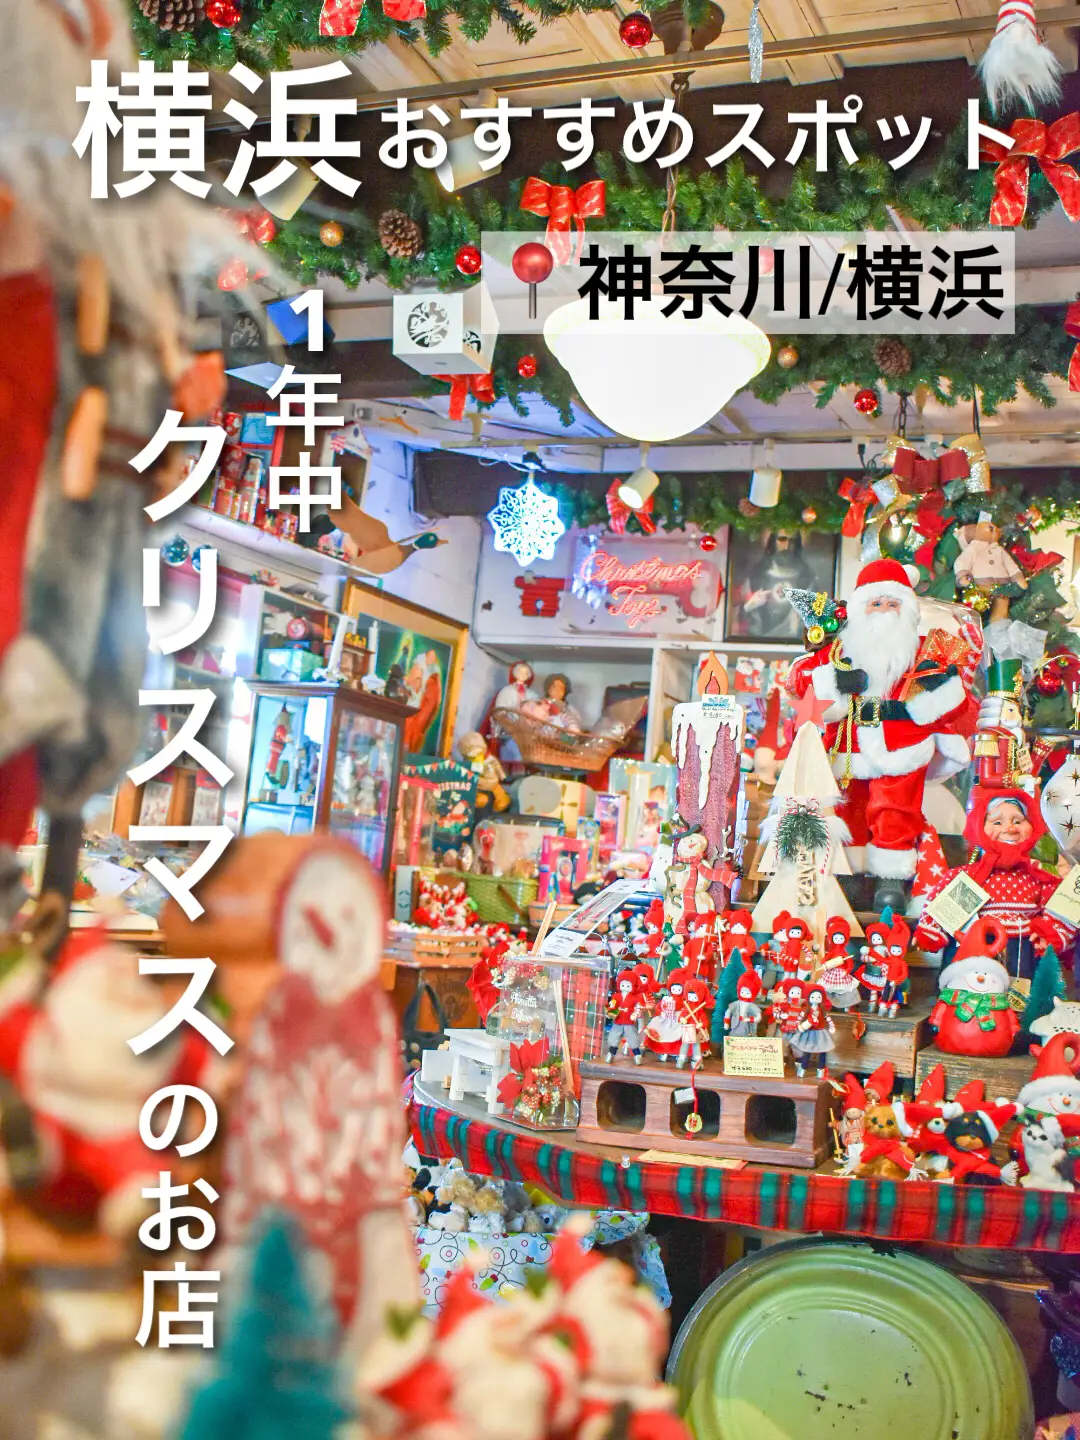 クリスマス感が溢れる 横浜 - Lemon8検索